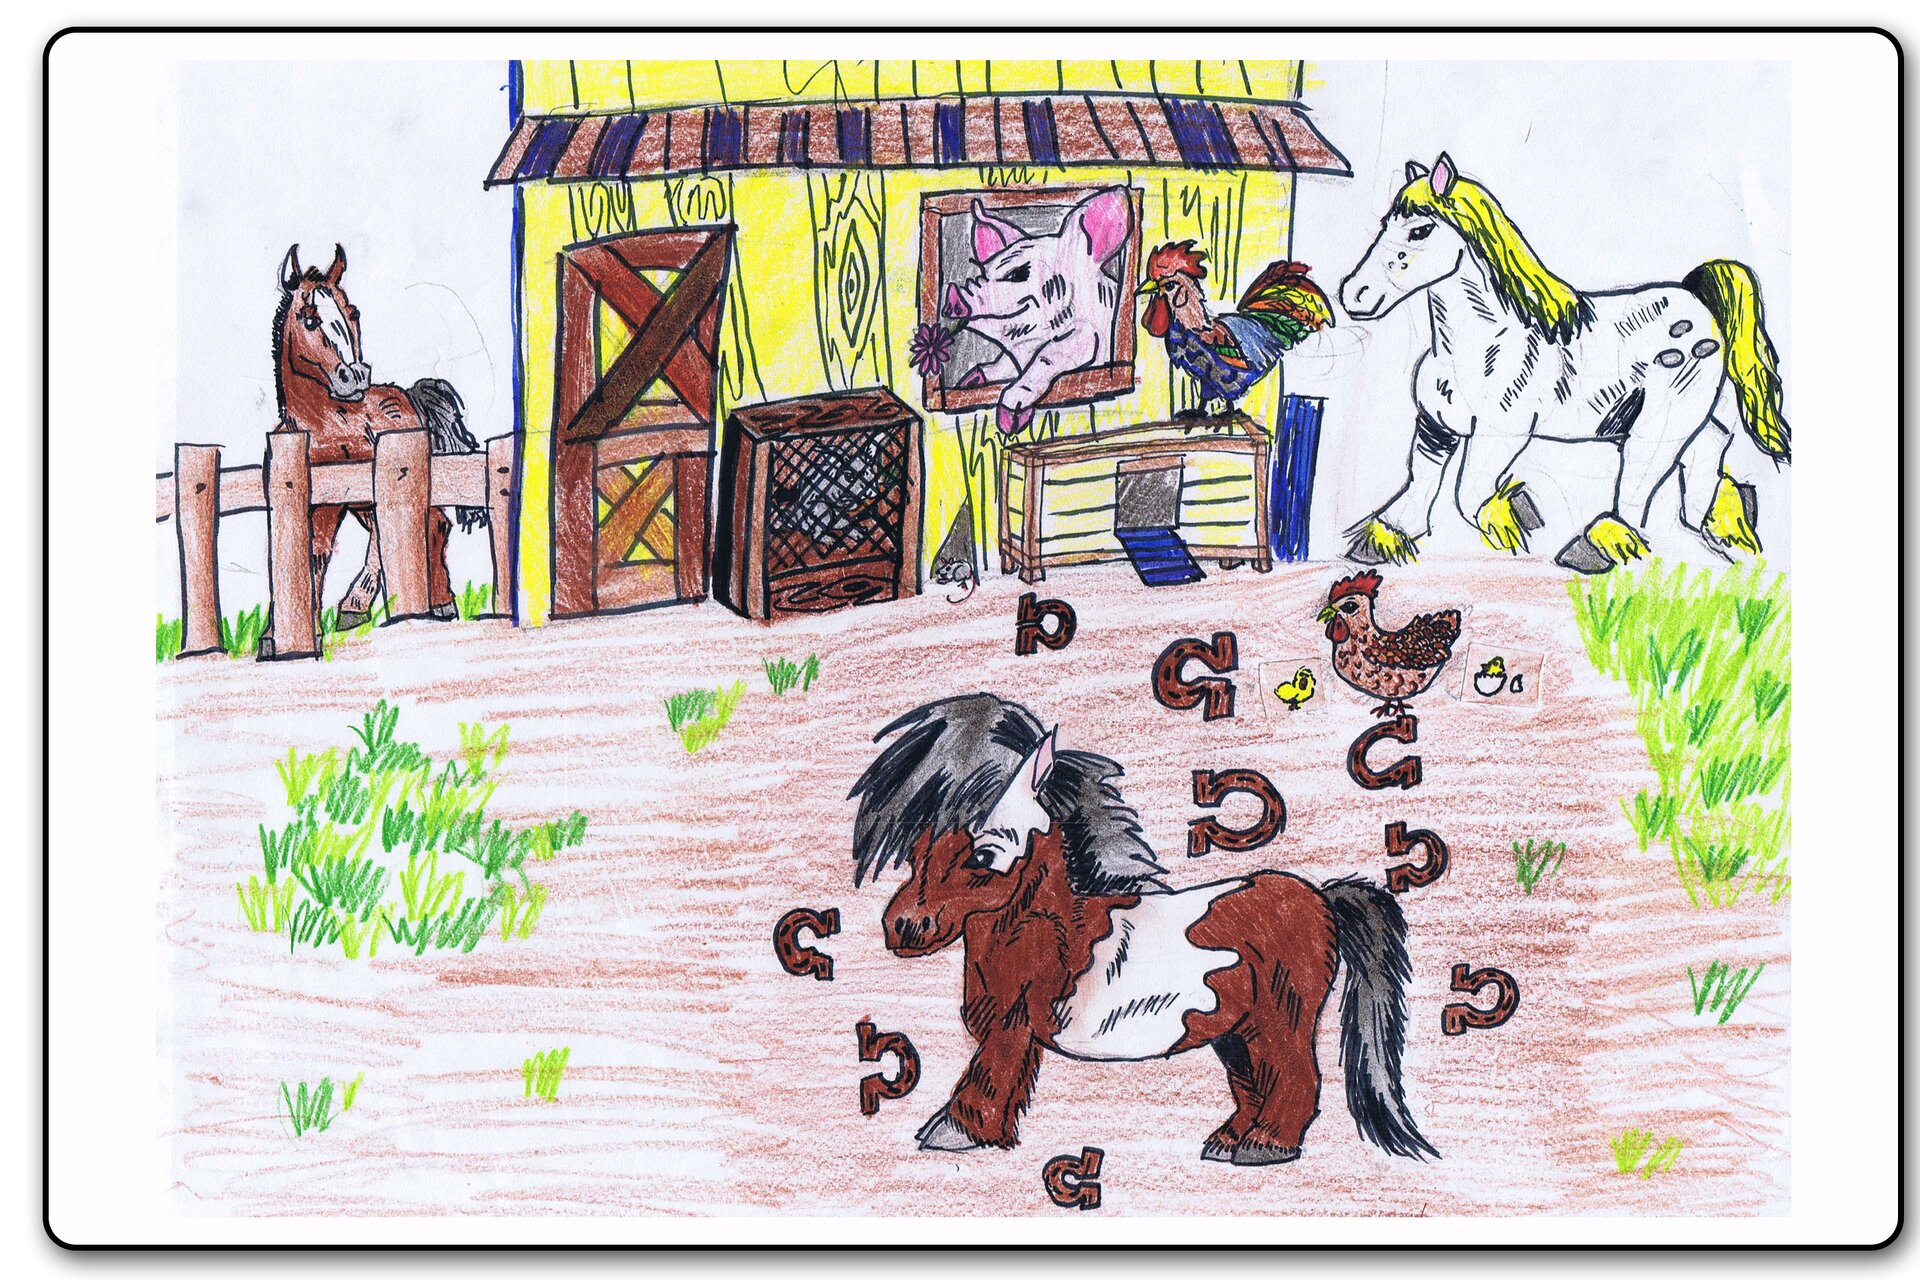 Ilustracja 11 galerii prac plastycznych uczniów. Ilustracja przedstawia farmę na której pasie się kucyk, dwa konie, kura i pisklęta. W stodole siedzi świnka i kogut. Kasztanowo‑srokaty kuc o ciemnym włosiu znajdujący się na pierwszym planie otoczony jest podkowami.  Z drewnianej stodoły z daszkiem i drewnianymi drzwiami otoczonej kurnikiem i kraciastą skrzynią, przez okno wystawia głowę świnia z kwiatkiem w pyszczku. Na kurniku przy stodole siedzi kogut. Koń na prawo od stodoły jest siwy o złotym włosiu. Koń po lewej od stodoły jest za płotem, również ma kasztanowo‑srokatą maść i ciemne włosie. 